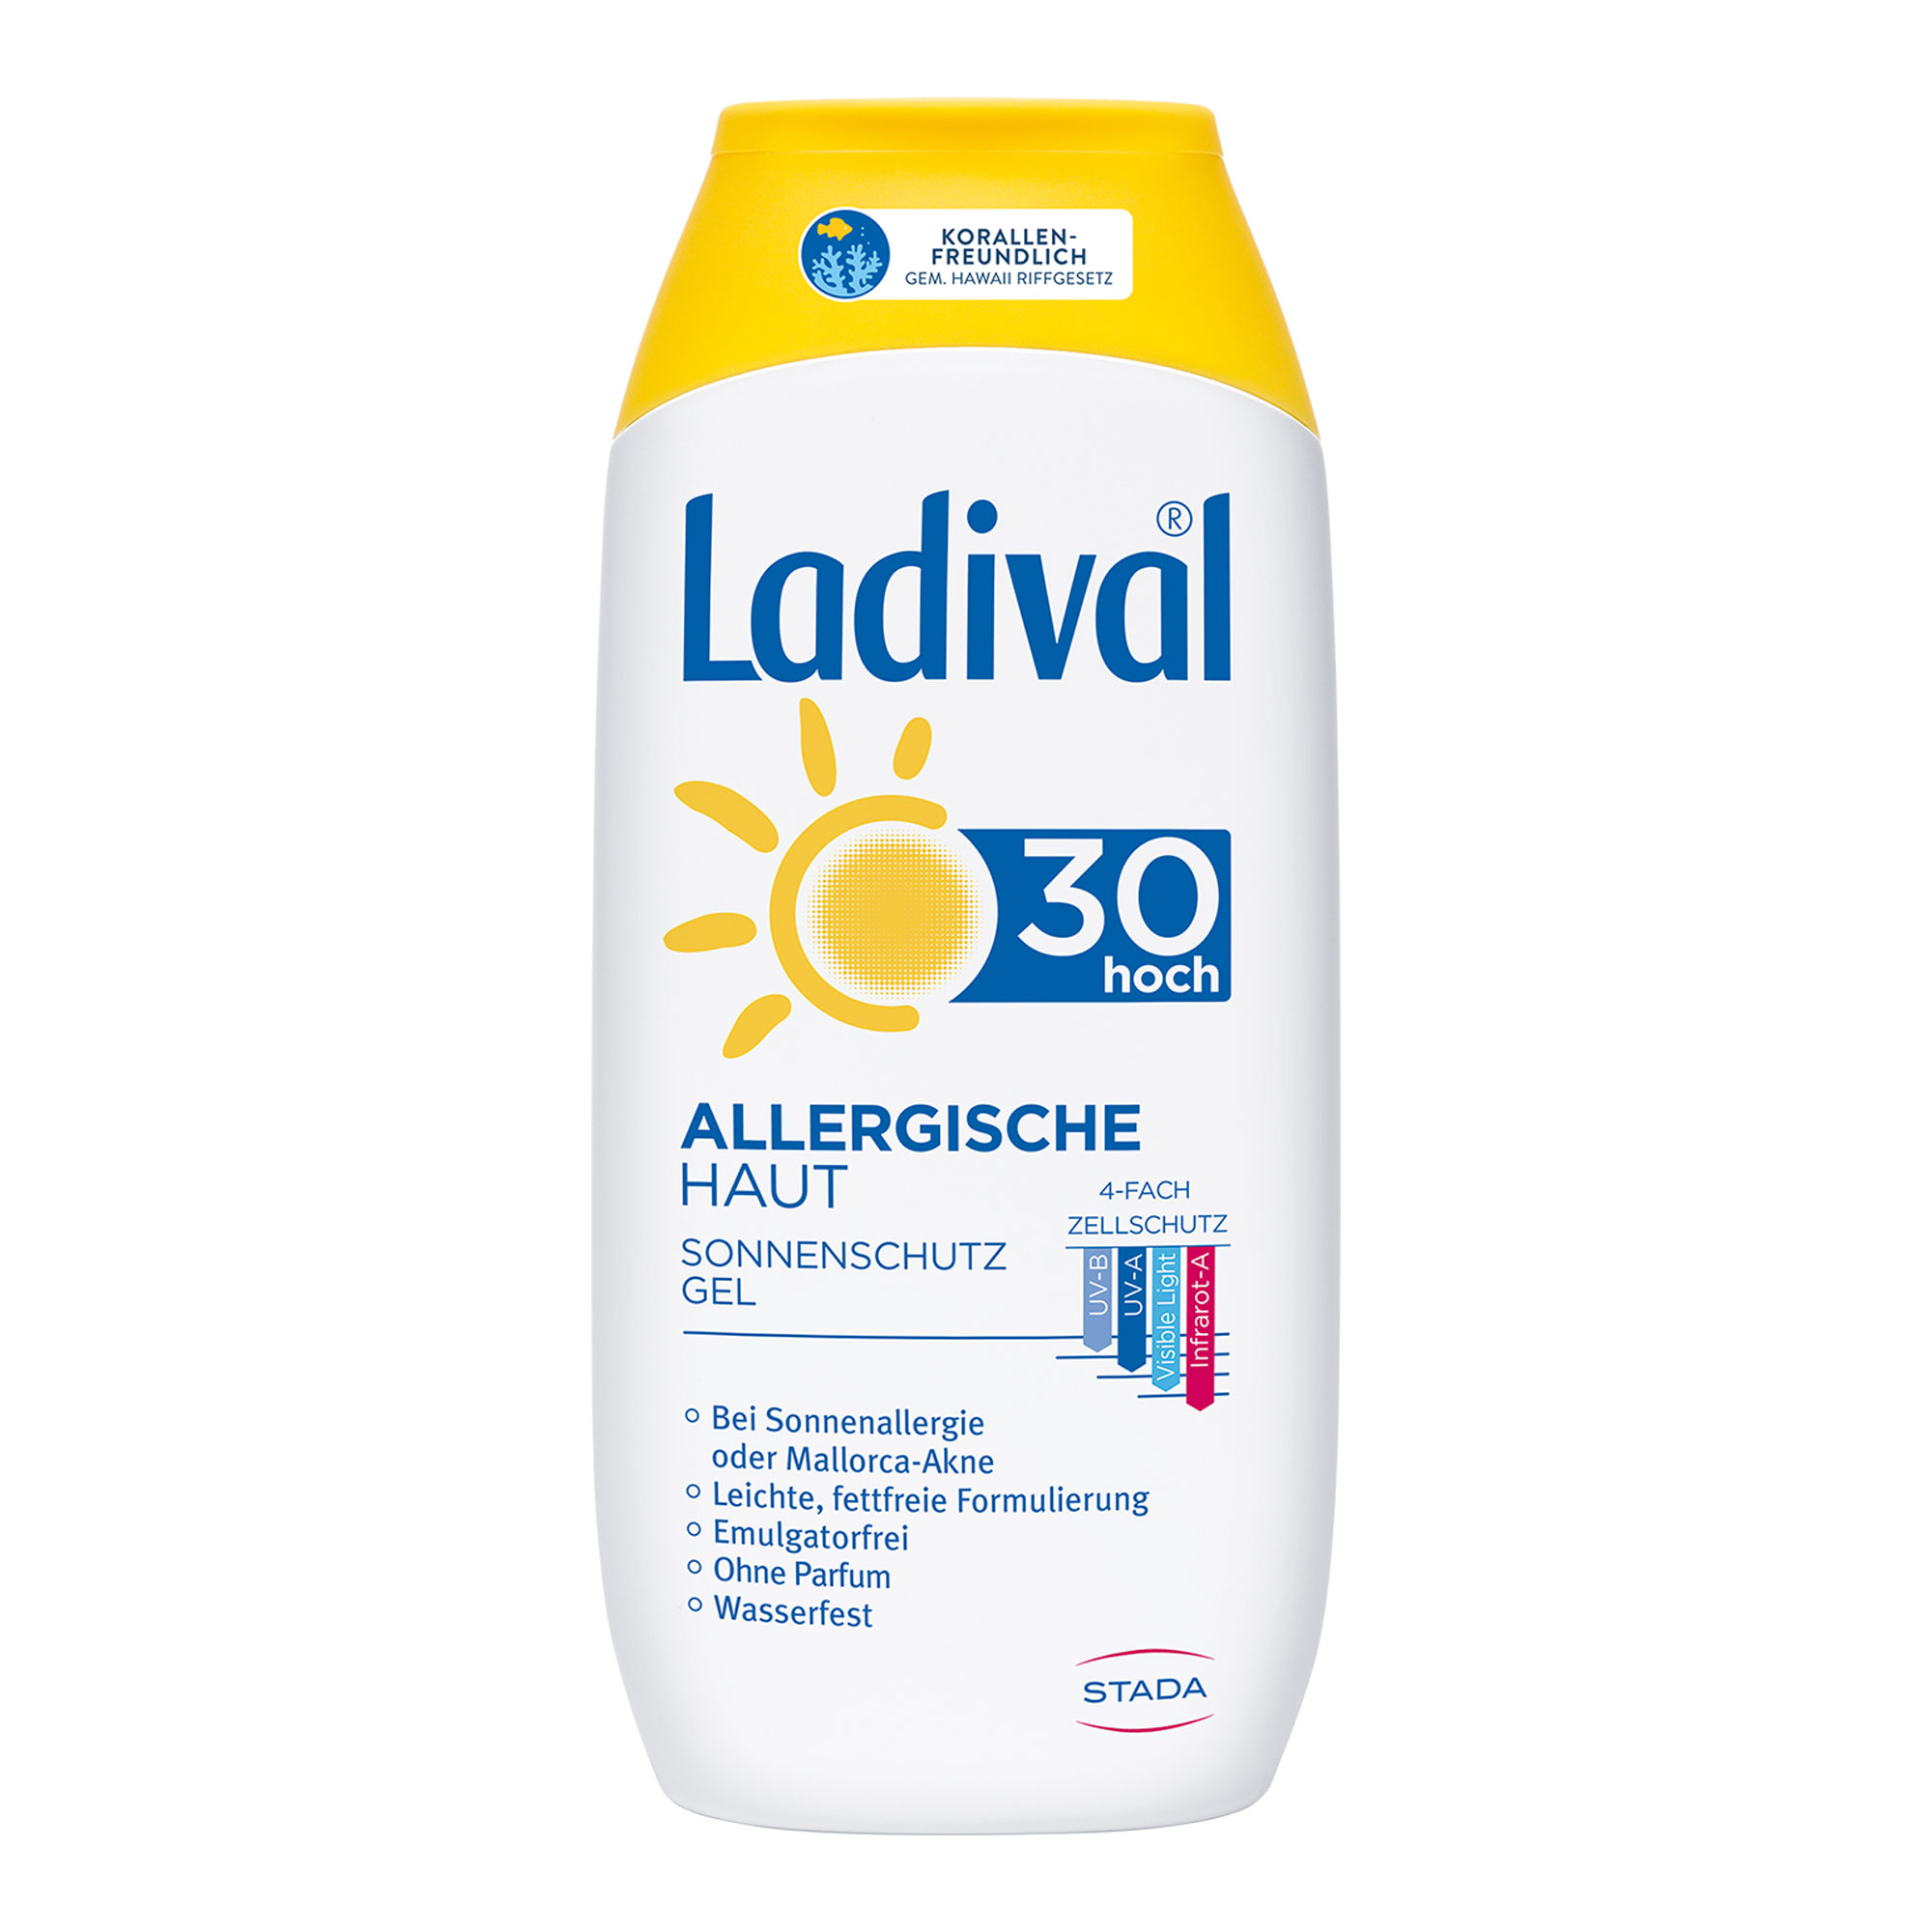 Sonnenschutz mit LSF30 für zu Allergien neigende Haut.